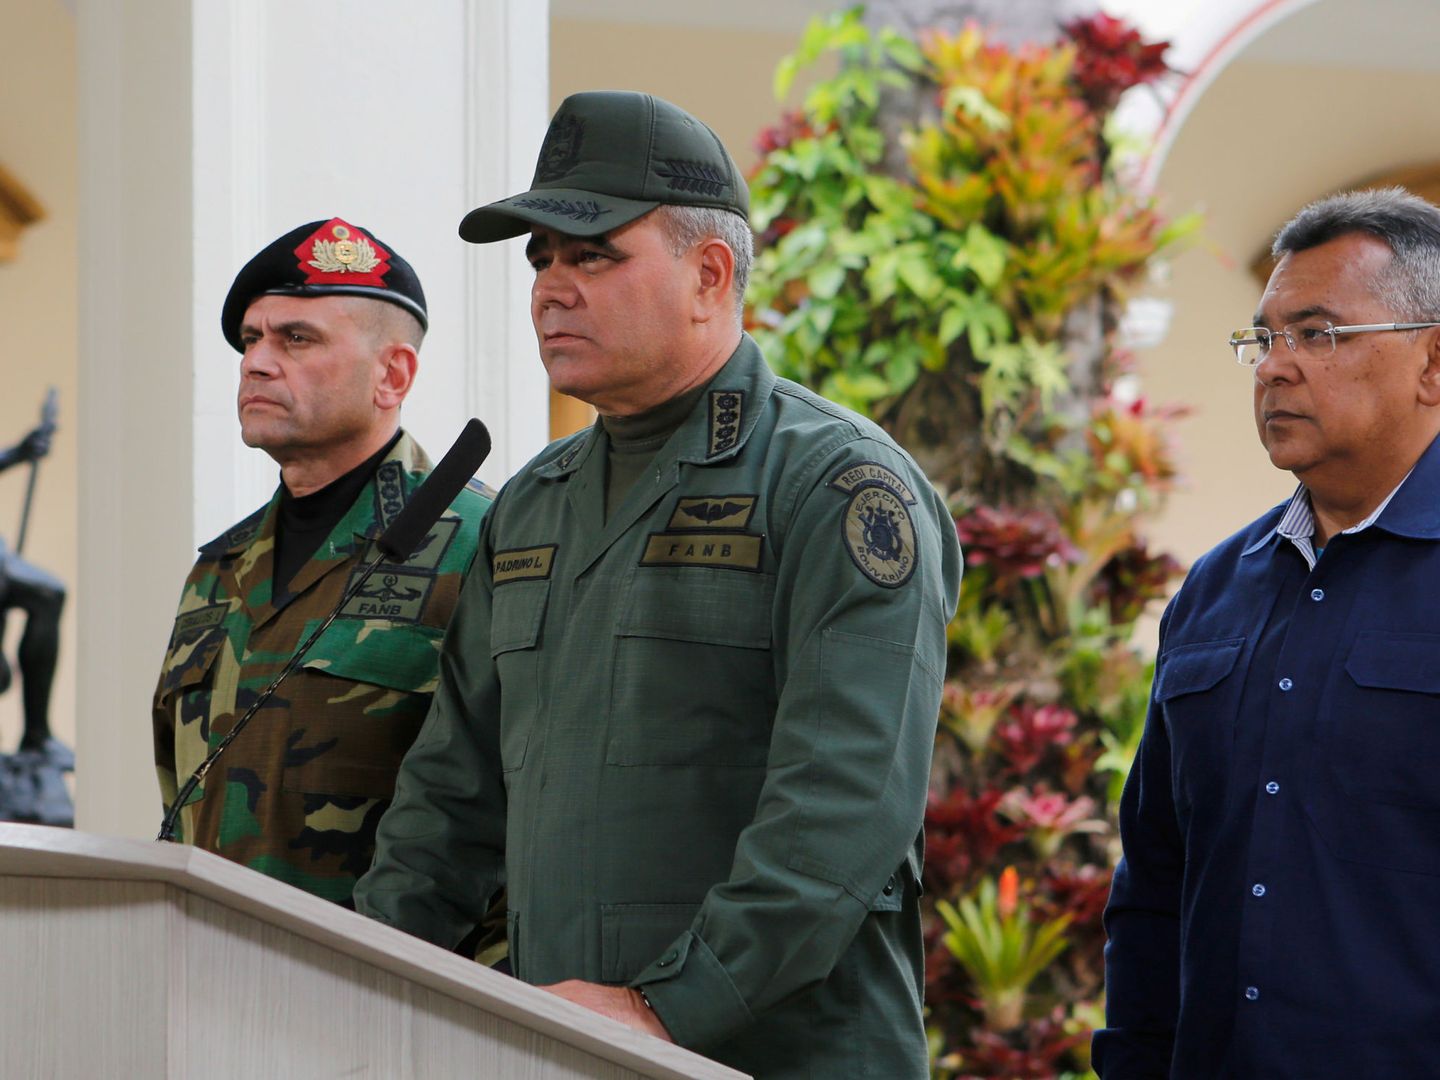 El ministro de Defensa venezolano, Vladimir Padrino, defendió el 'statu quo' ante la rebelión. (Reuters)